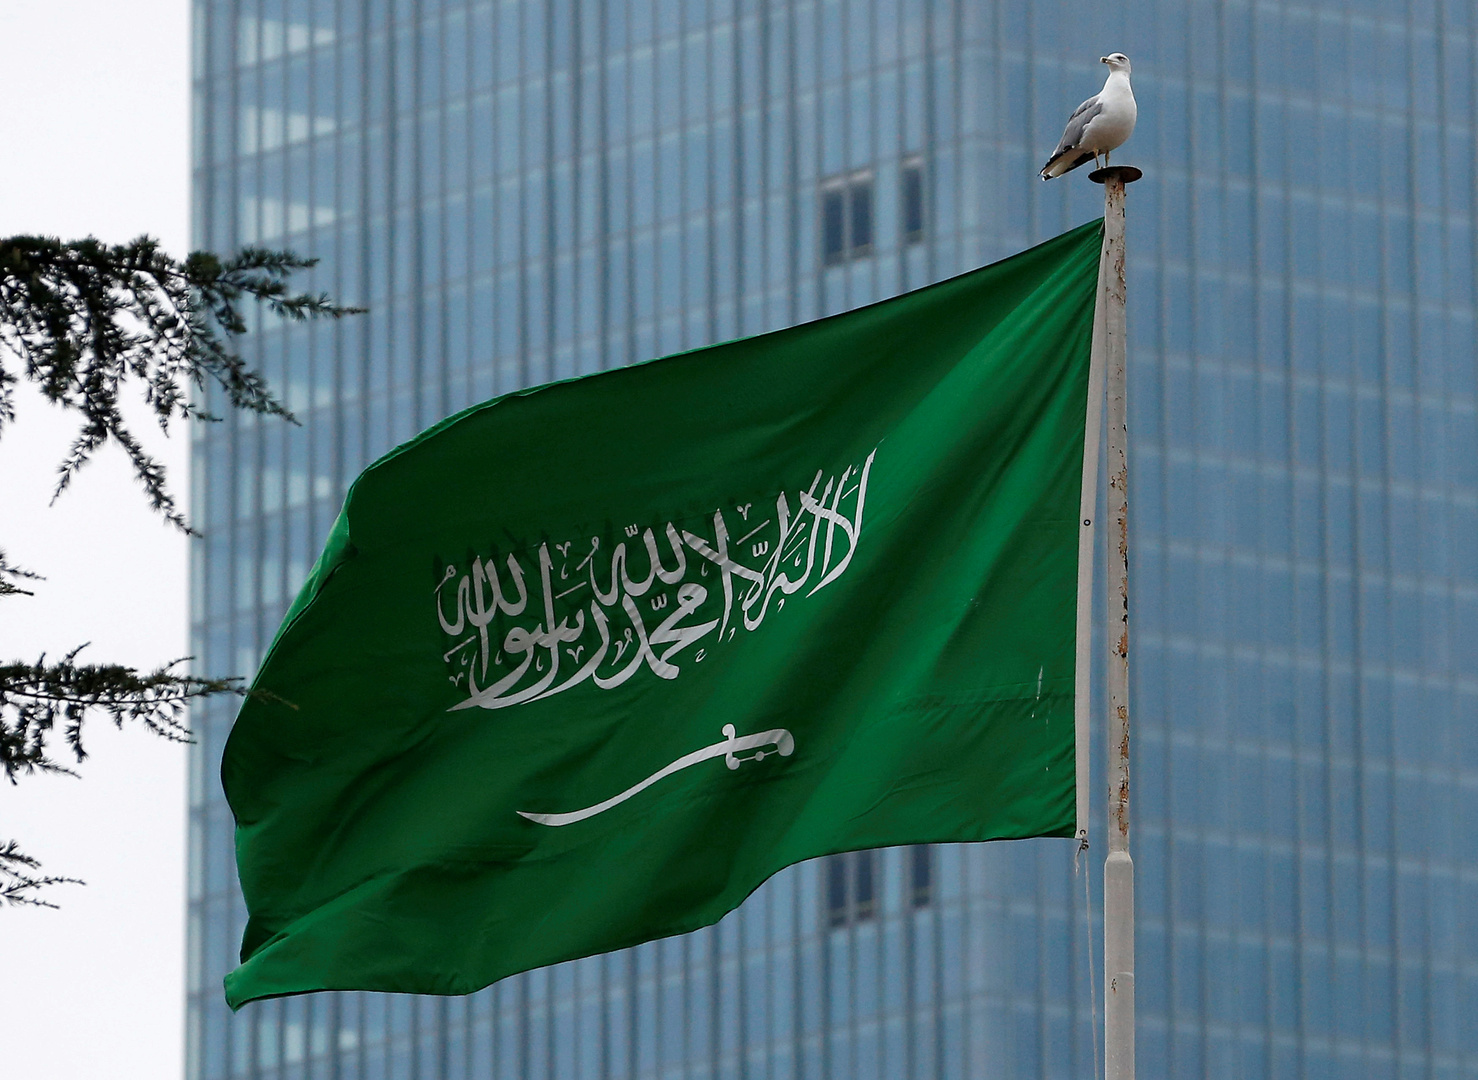 السعودية تعلن إحباط تهريب كمية كبيرة من المخدرات بإحدى الشاحنات القادمة للمملكة (فيديو)